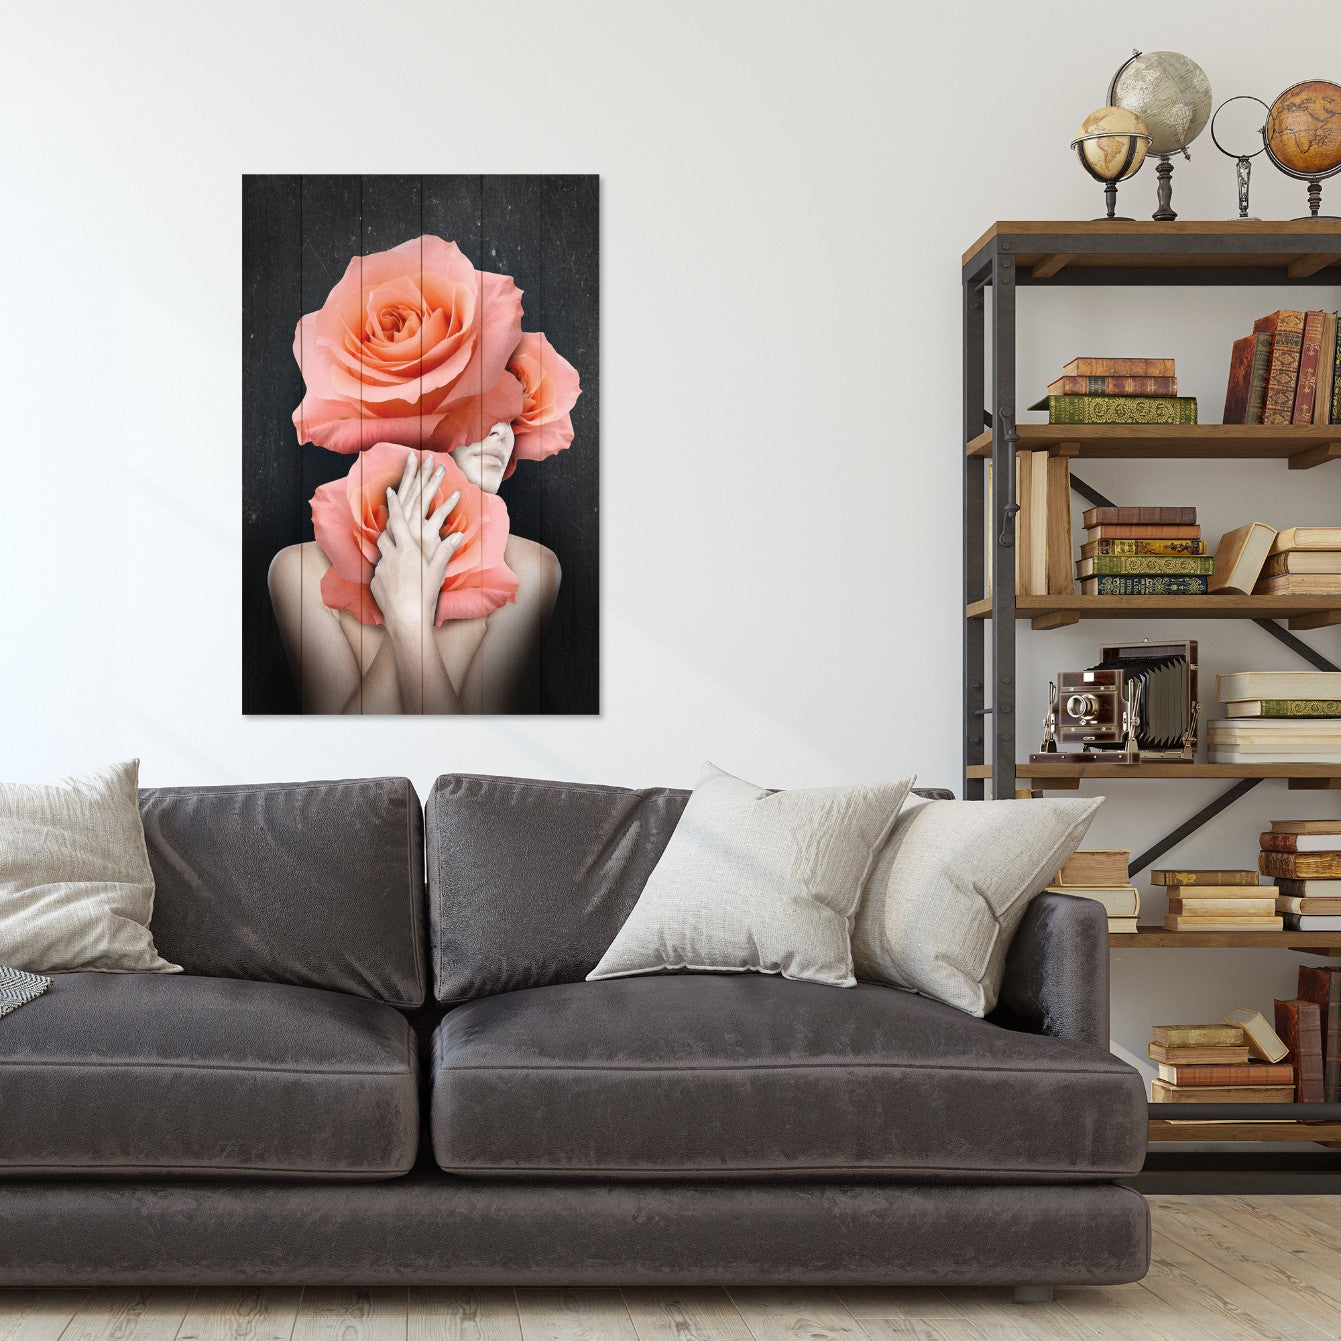 Obraz na drewnie Kobieta z dużymi różami - Woman Hugging Flowers